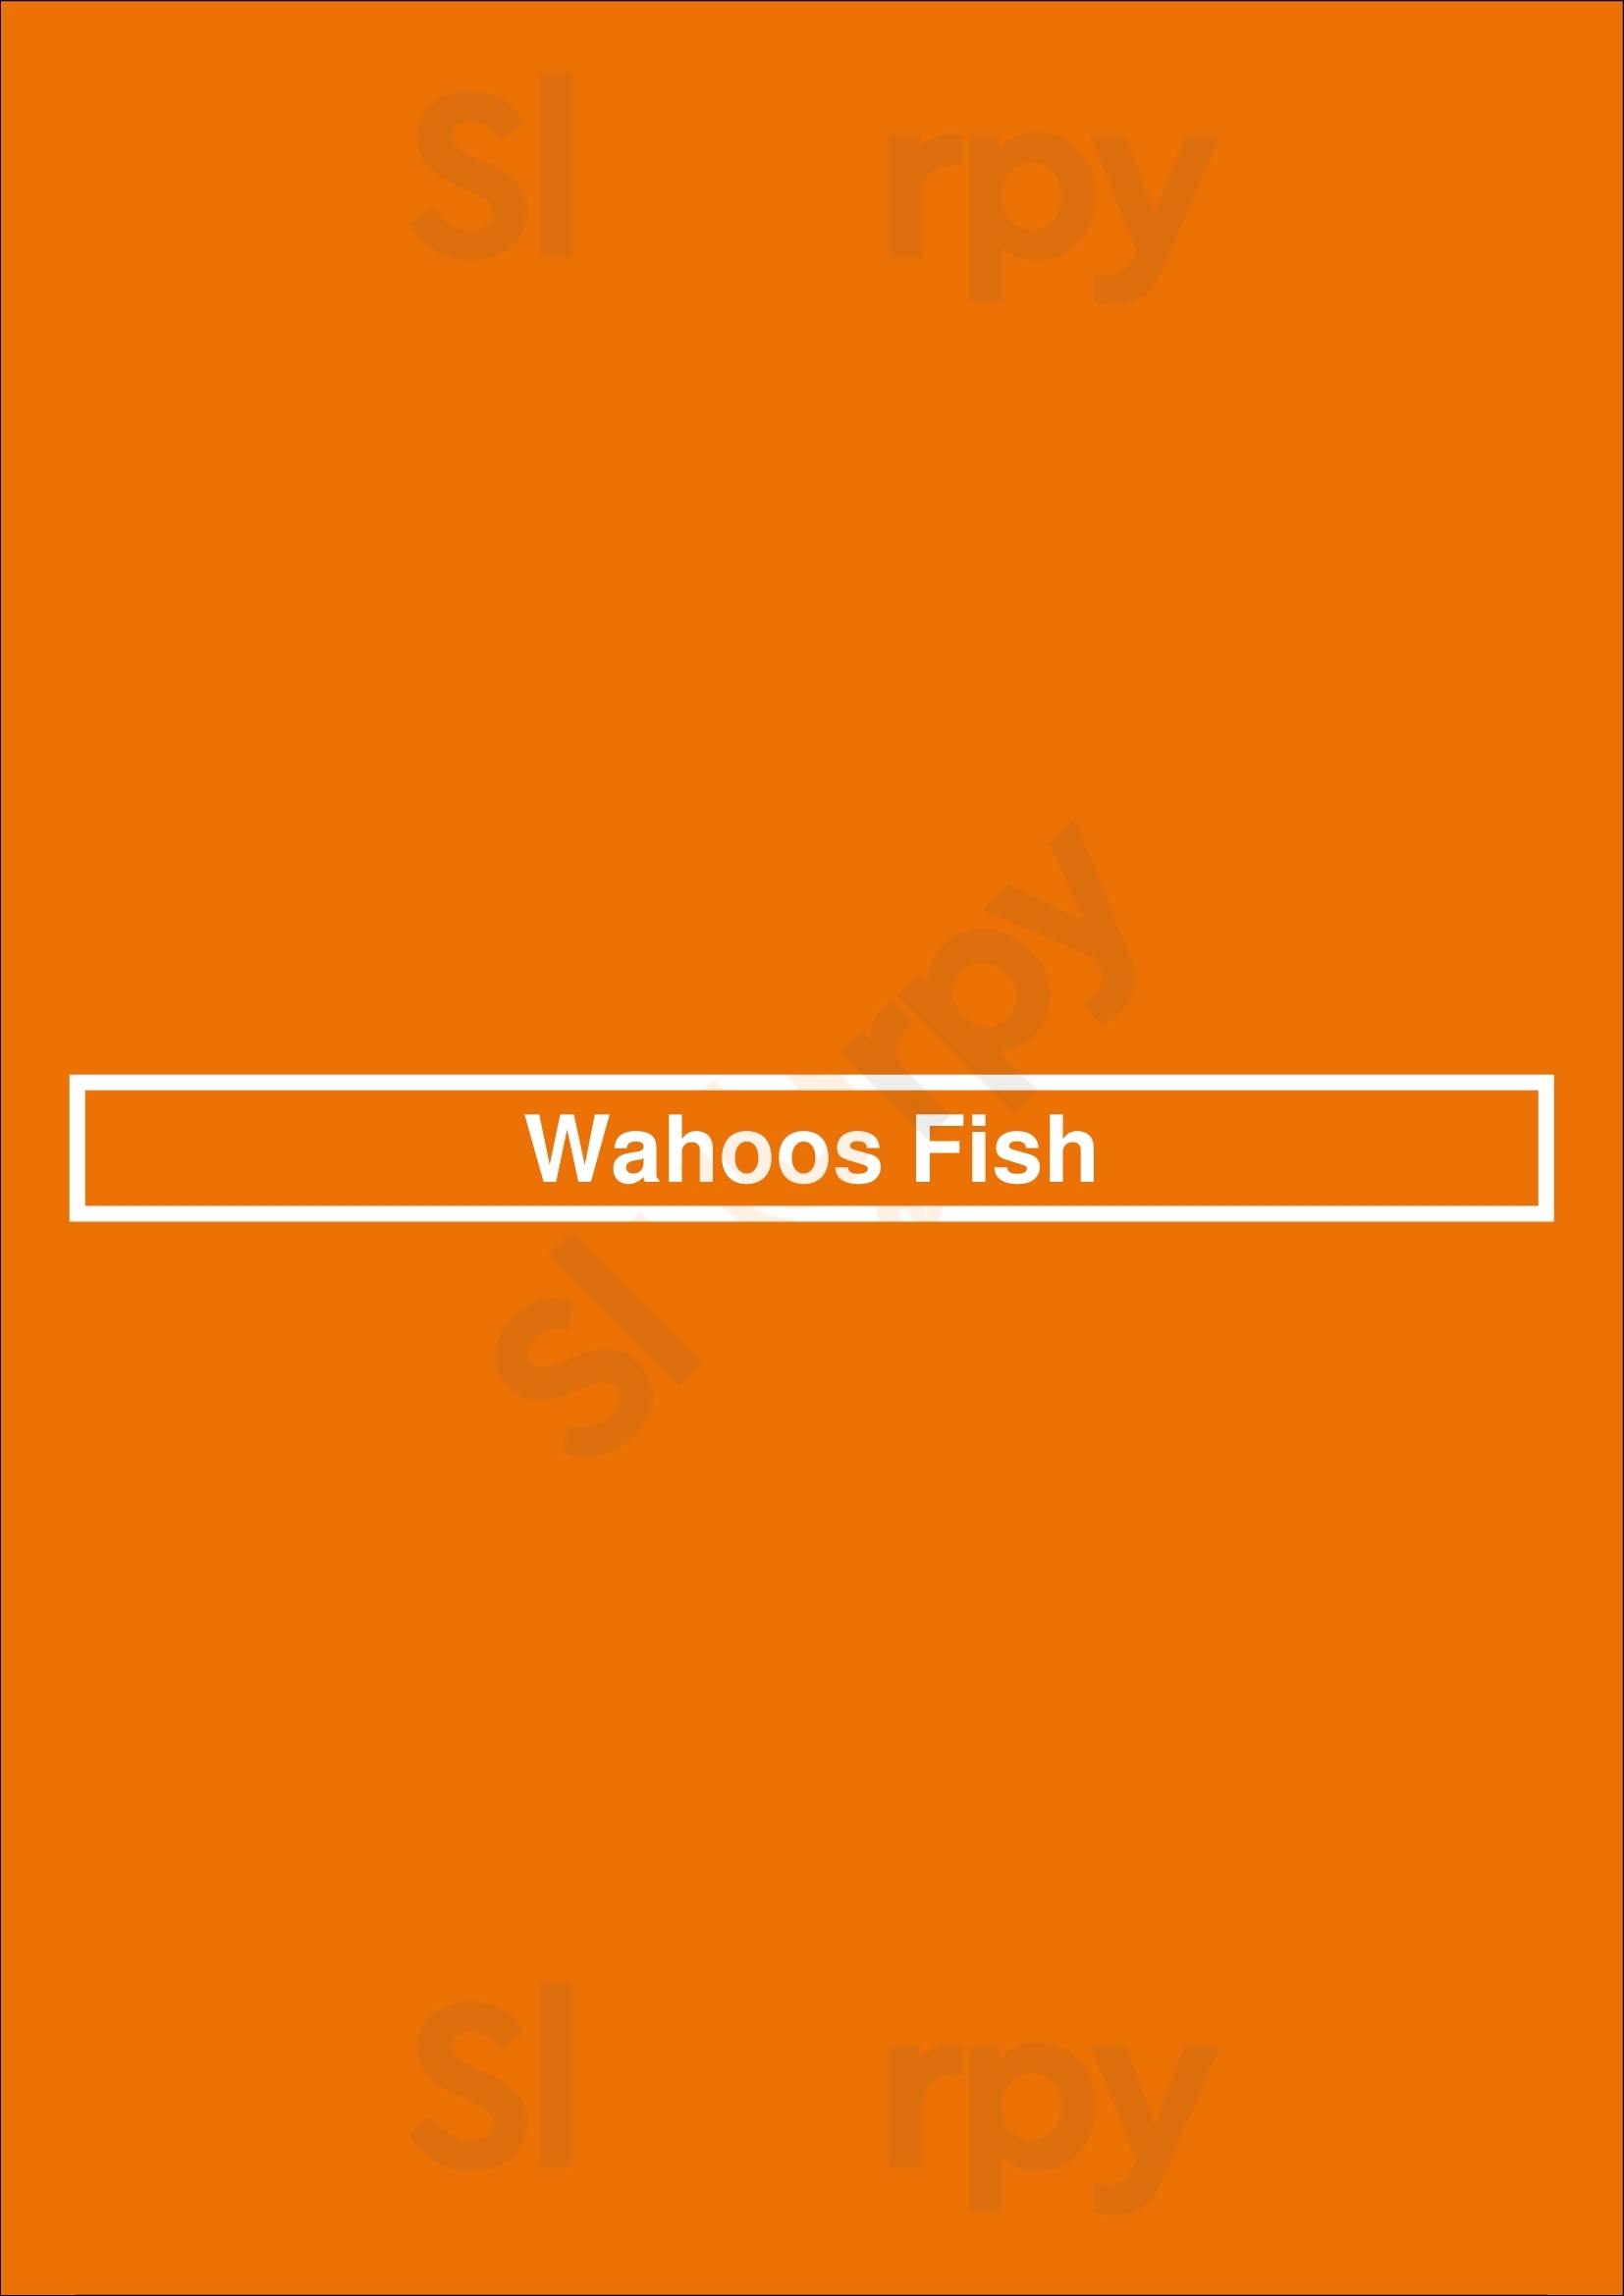 Wahoos Fish Newport Beach Menu - 1